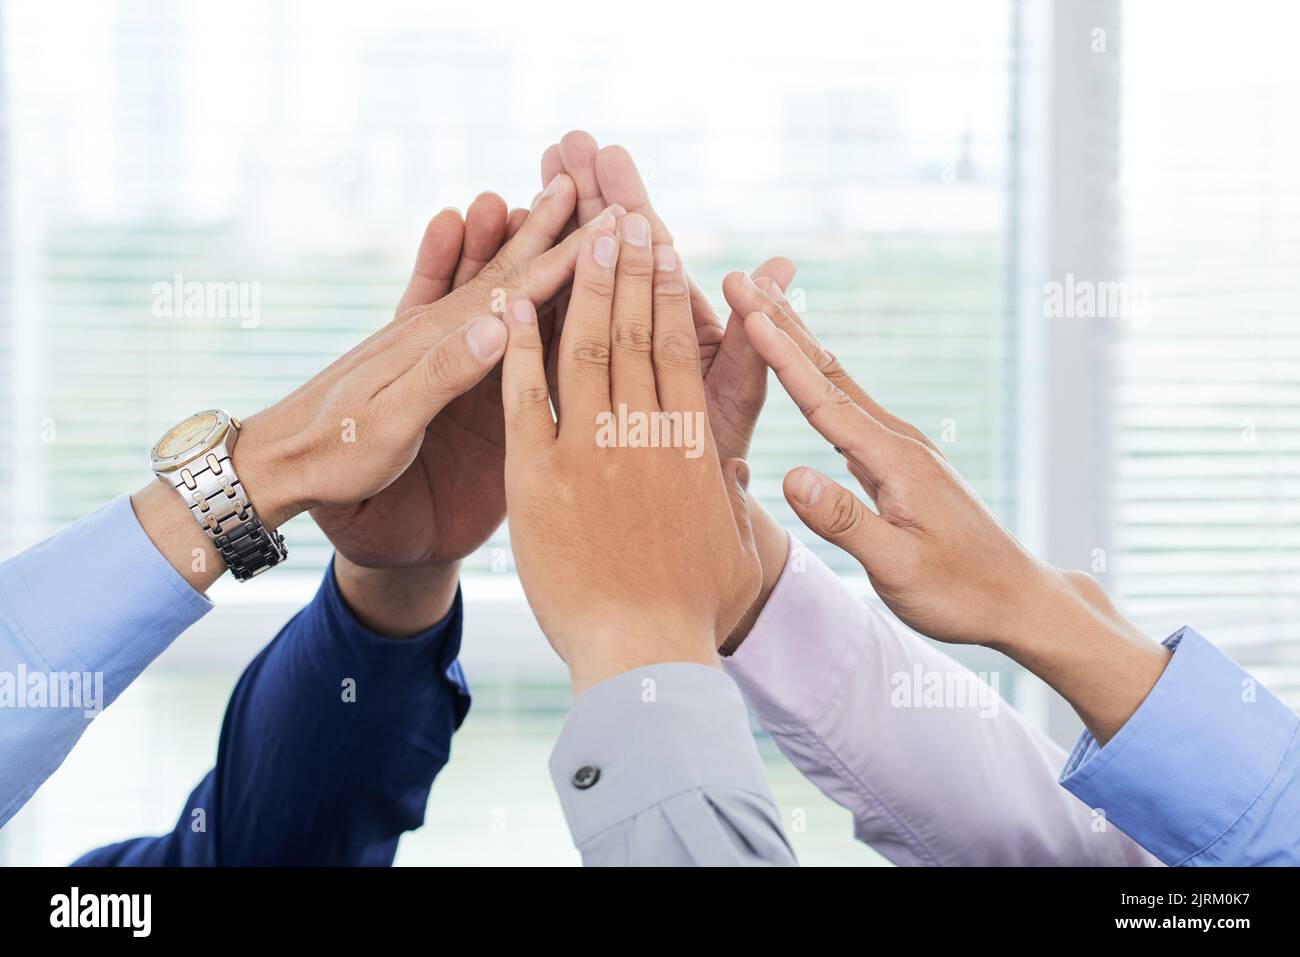 Nahaufnahme von nicht erkennbaren Angestellten mit weißen Kragen, die ihre Hände zusammenfügen und gleichzeitig Einheit zeigen Stockfoto